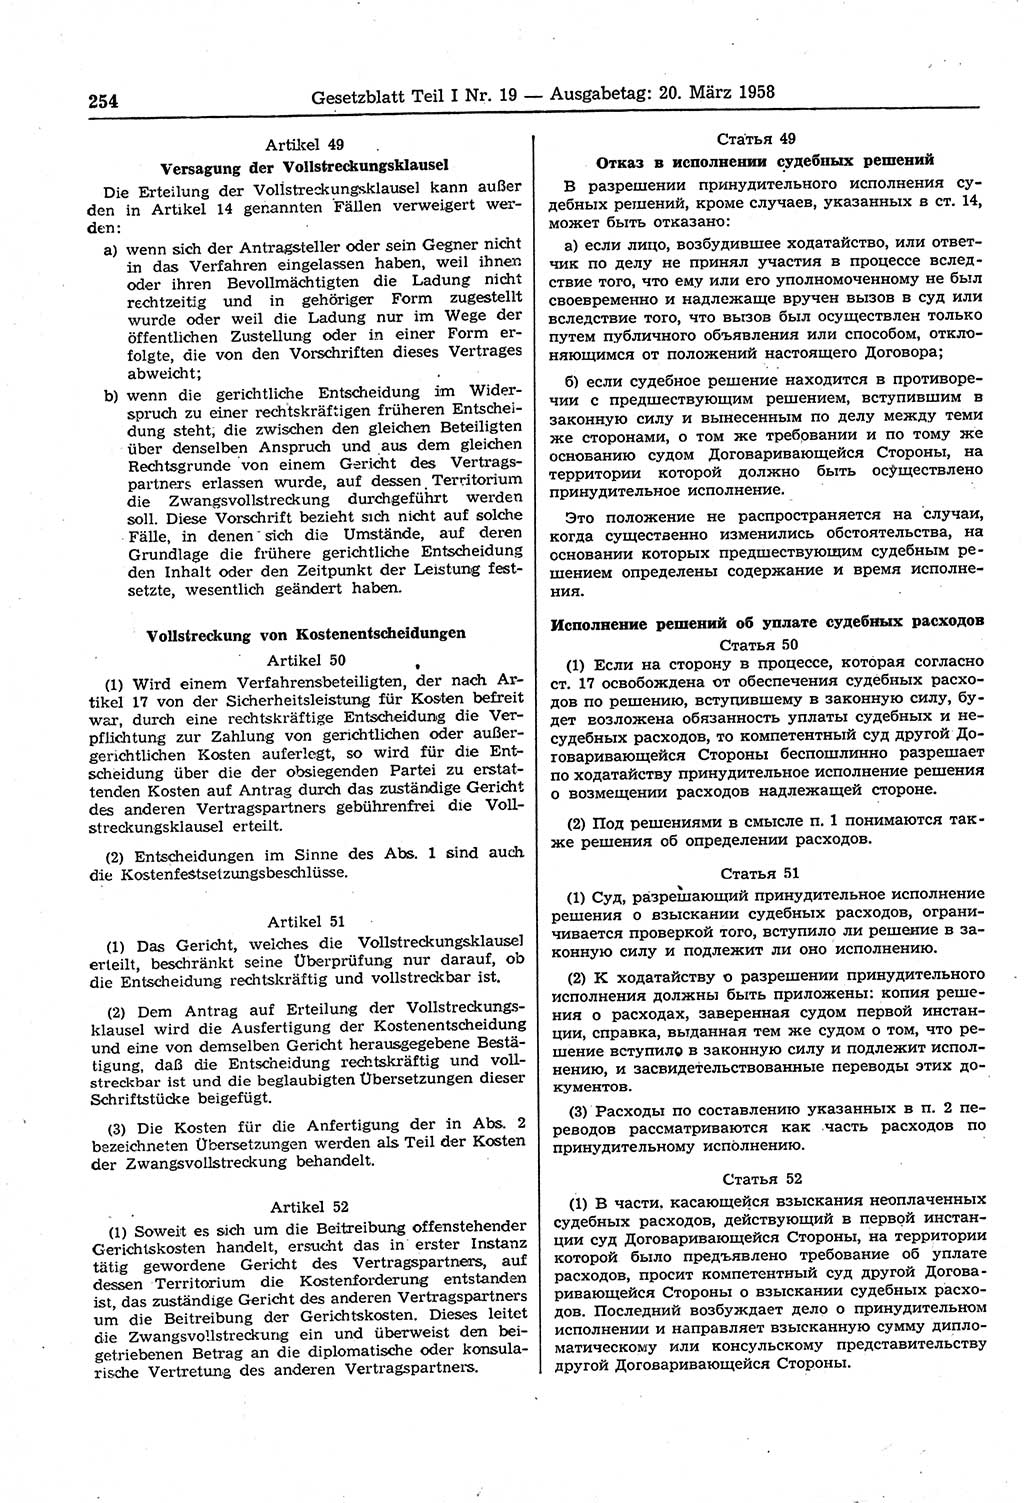 Gesetzblatt (GBl.) der Deutschen Demokratischen Republik (DDR) Teil Ⅰ 1958, Seite 254 (GBl. DDR Ⅰ 1958, S. 254)